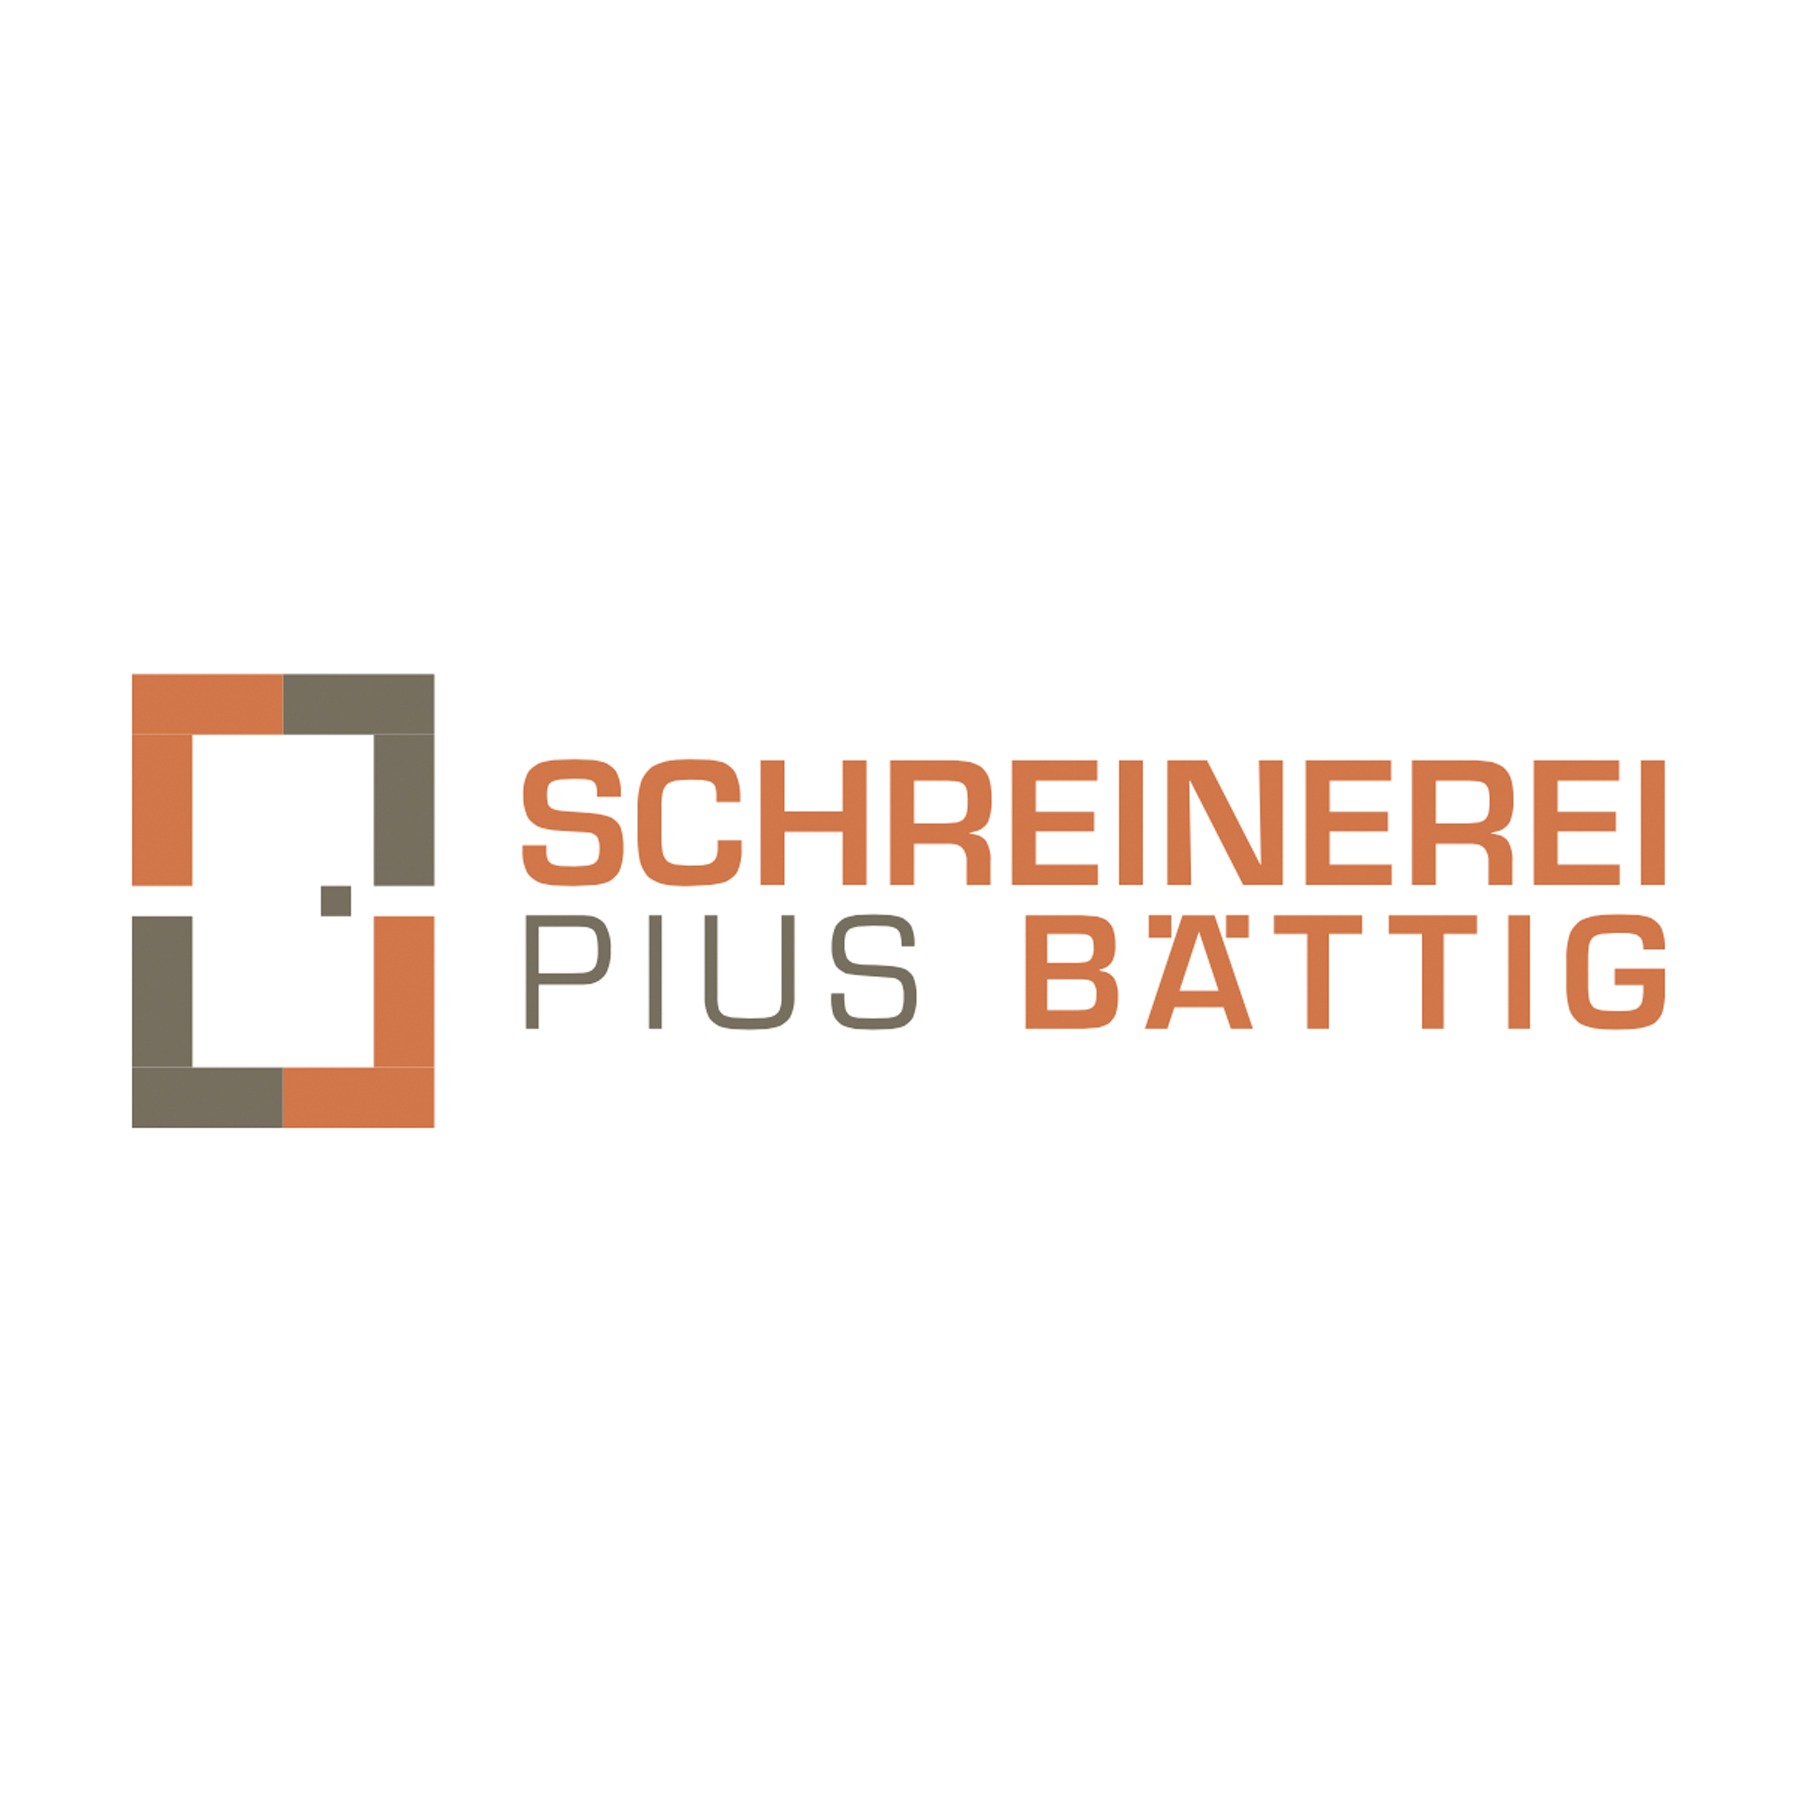 Schreinerei Pius Bättig Logo